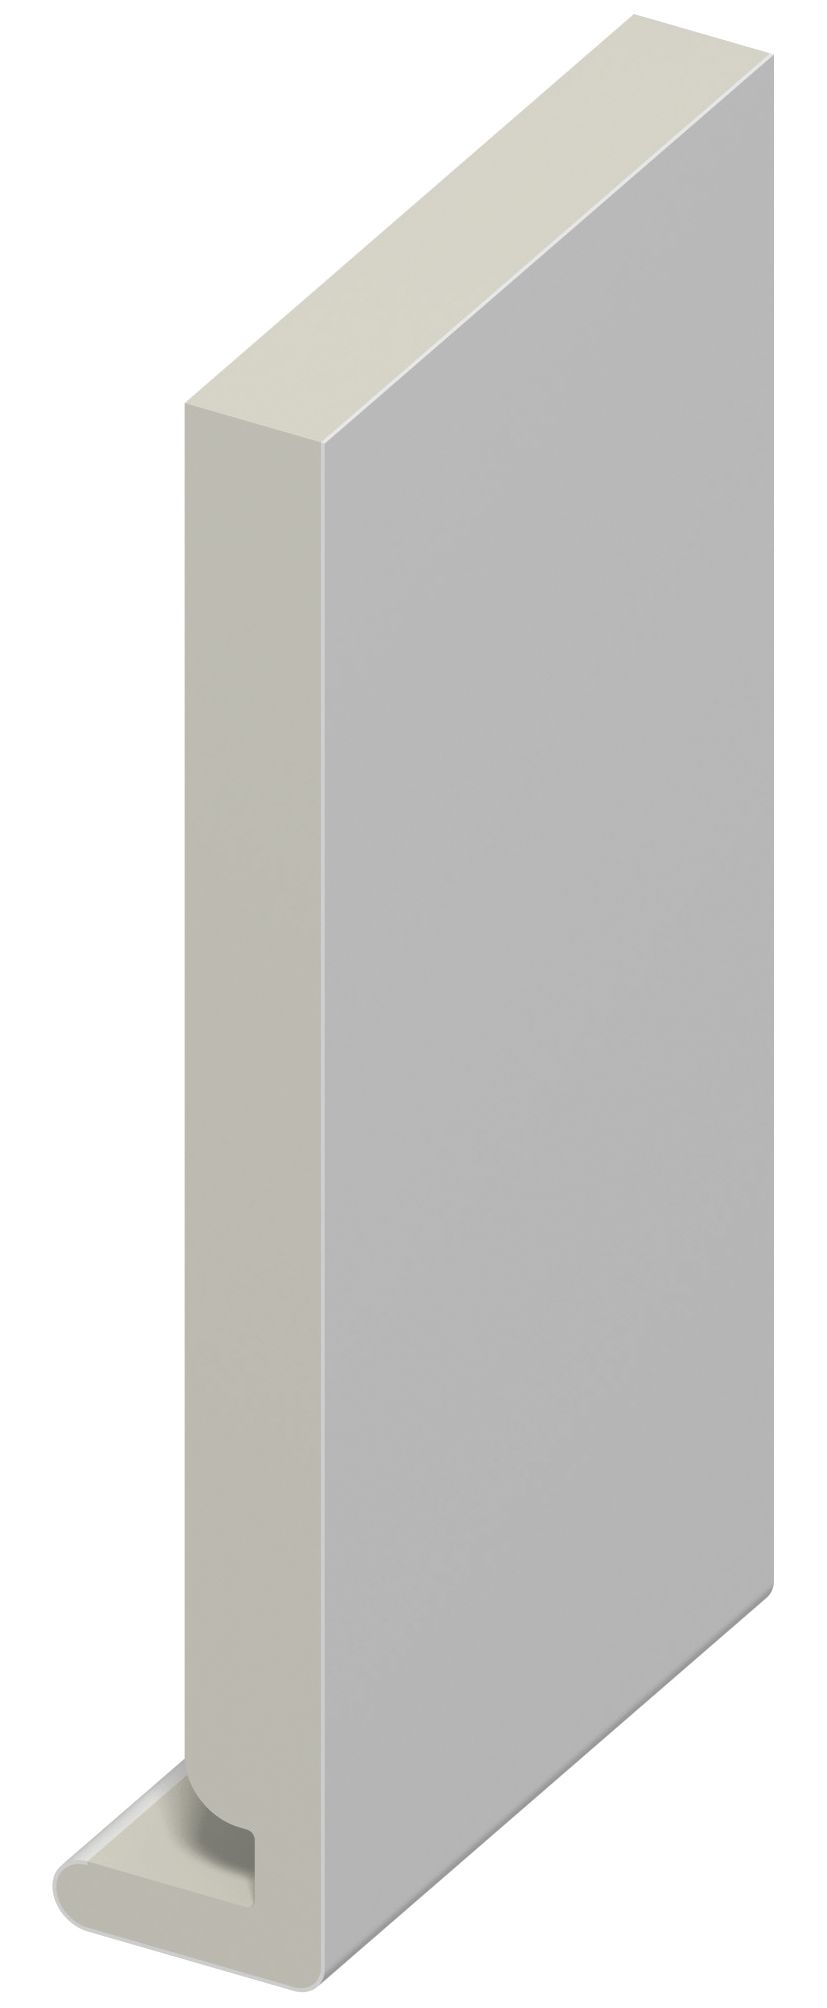 Image of Wickes Fascia Board - 175 x 18 x5m White